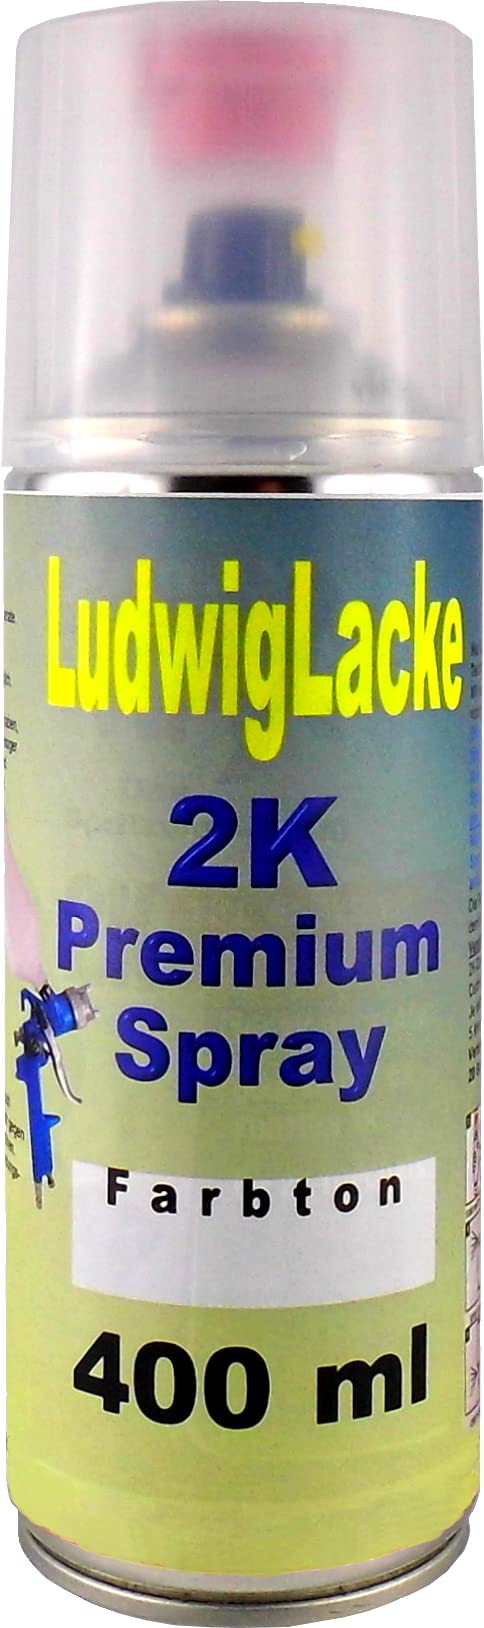 RAL 8019 Graubraun 2K Premium Spray SEIDENMATT 400ml von Ludwiglacke